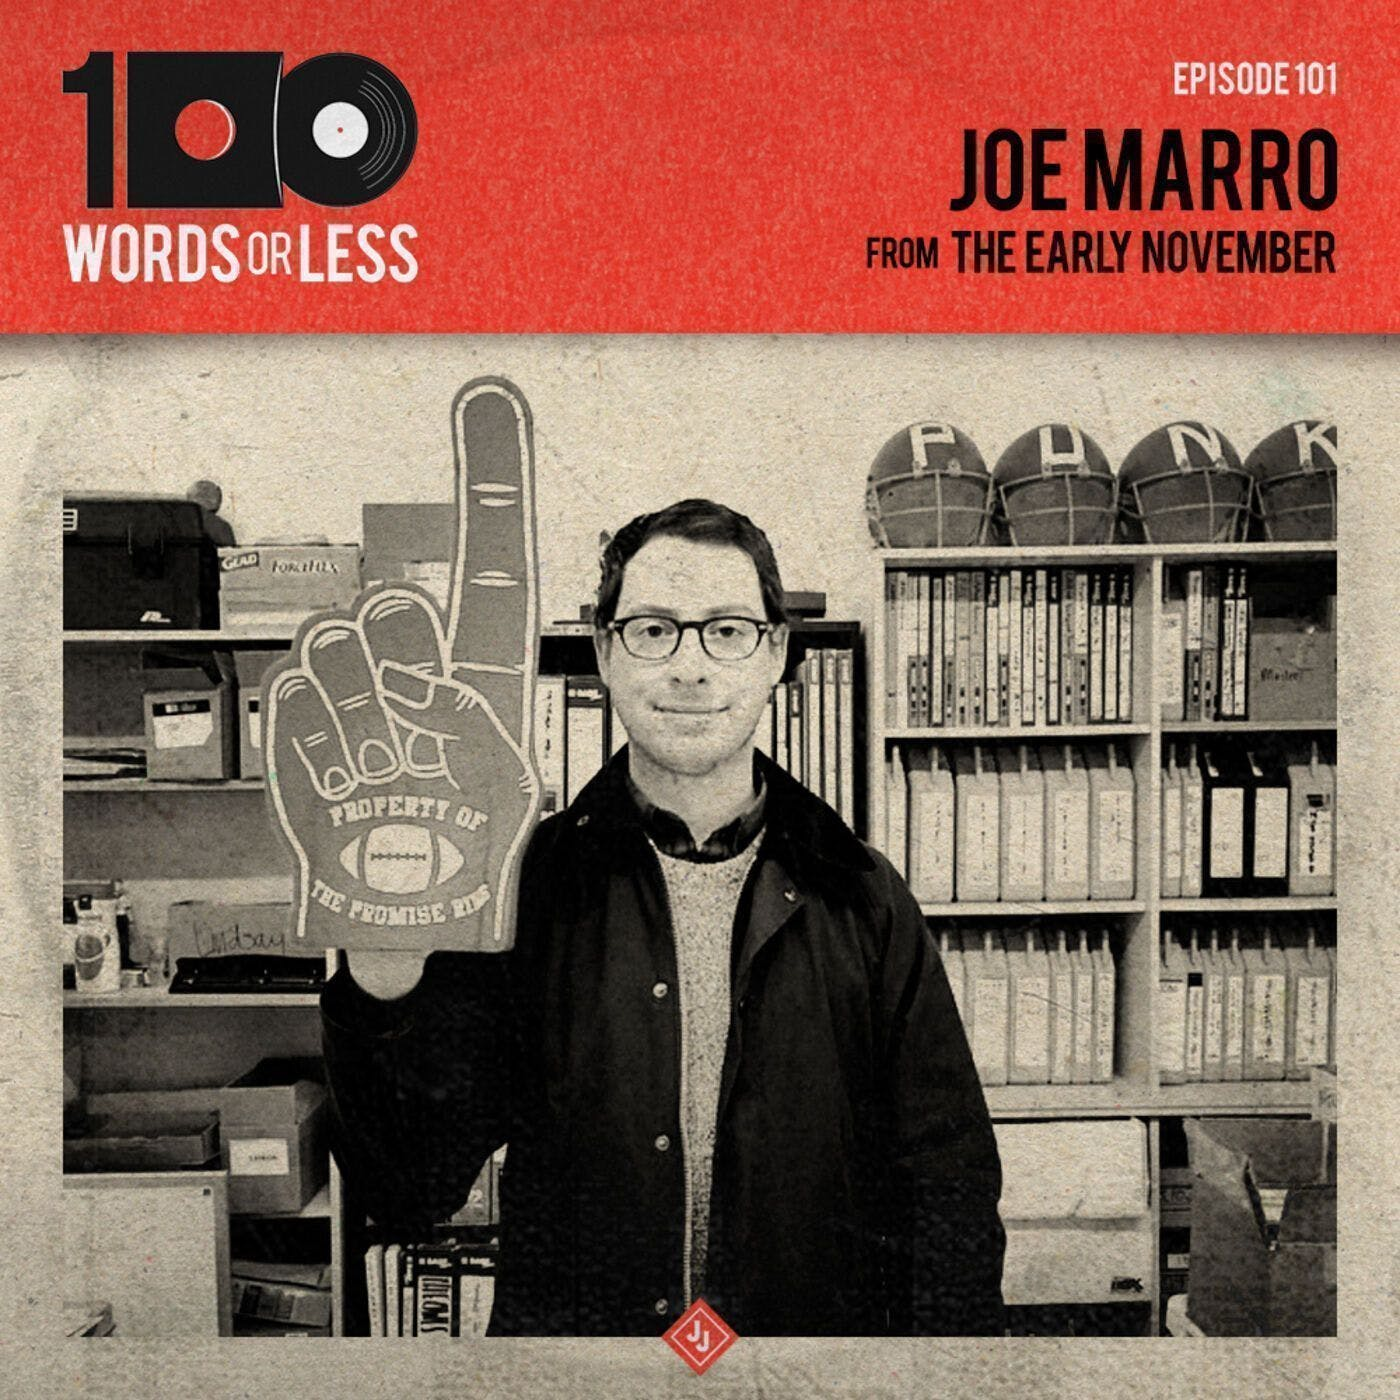 Joe Marro from The Early November